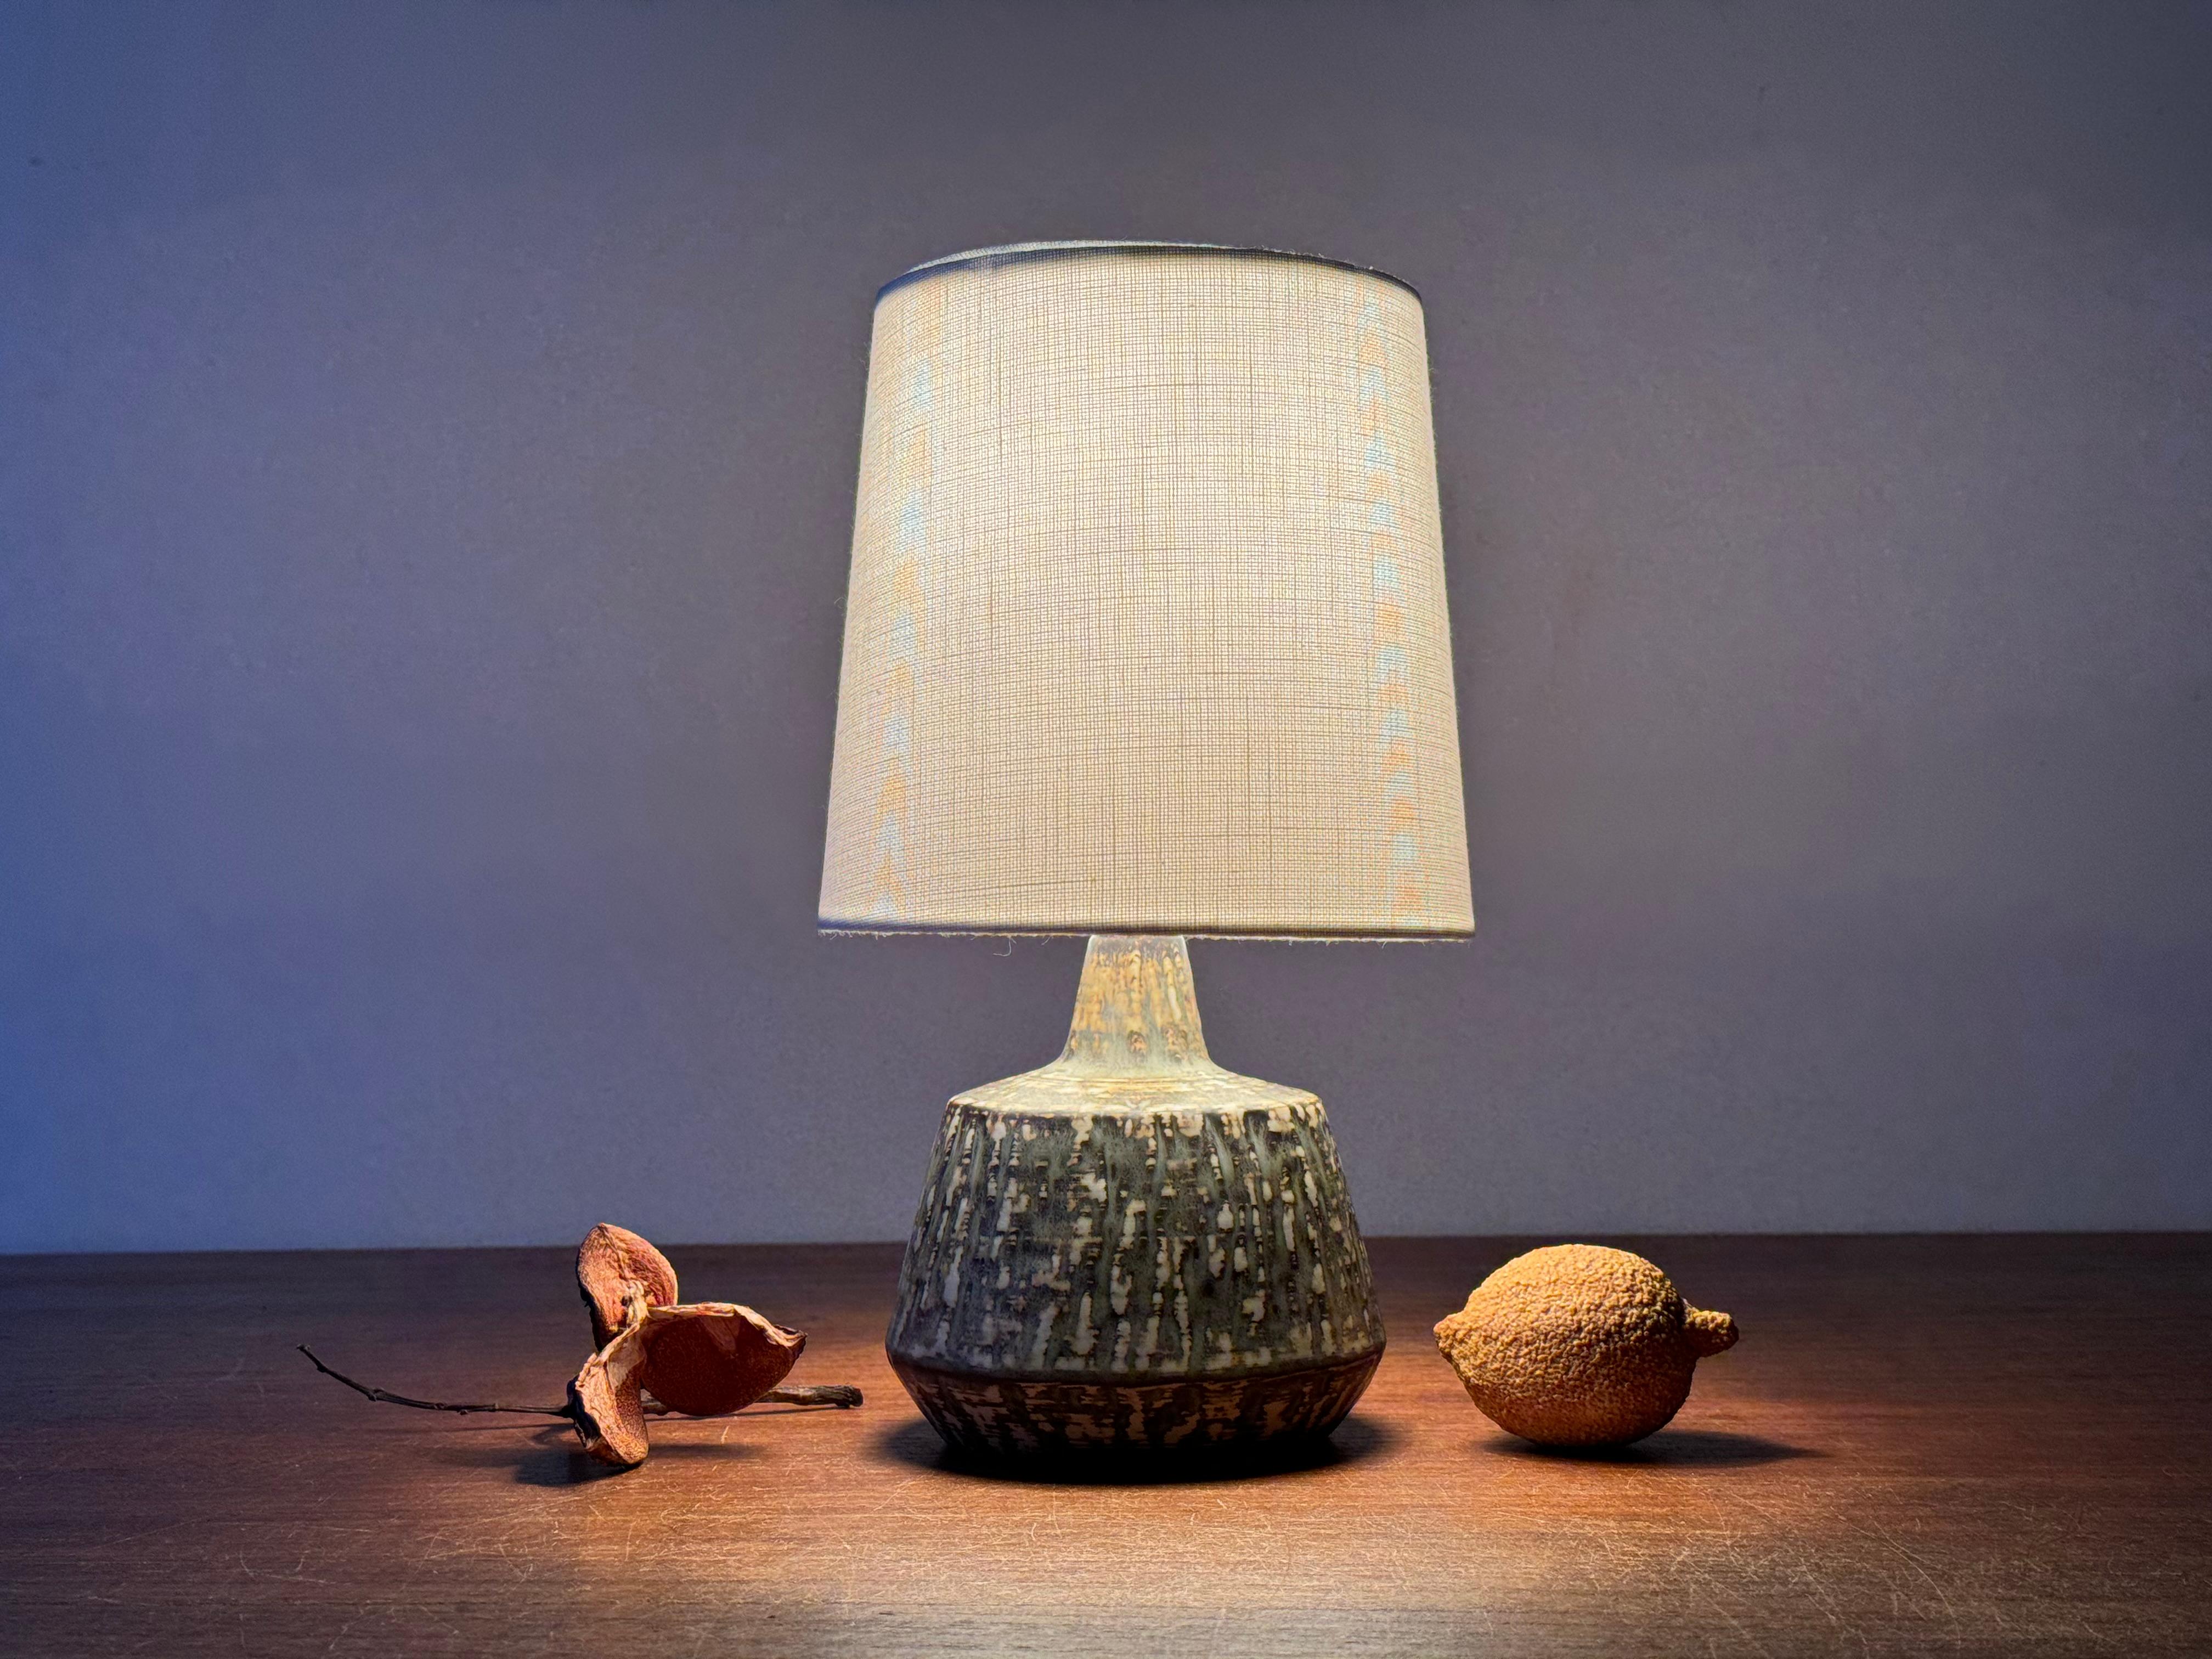 Petite lampe de table en céramique de Gunnar Nylund pour Rörstrand, Suède.
Il fait partie de la série 